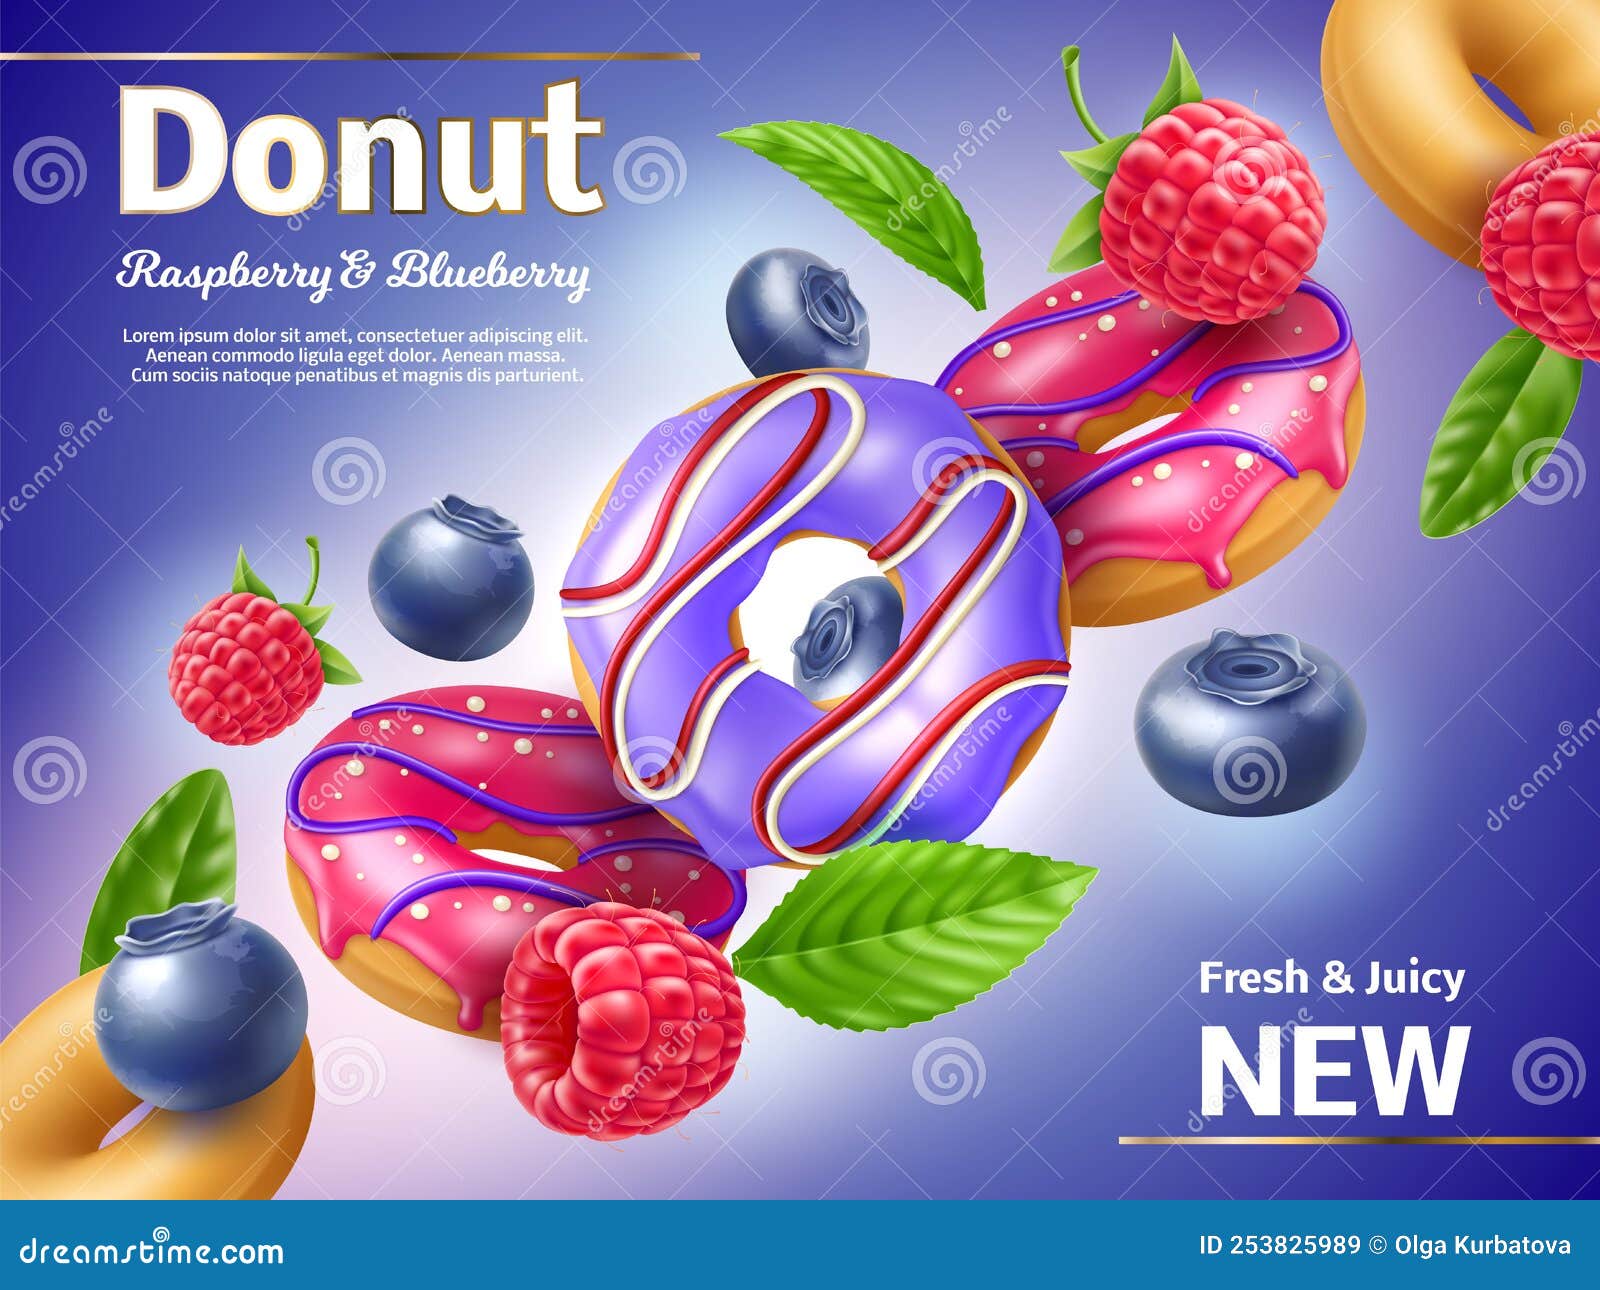 https://thumbs.dreamstime.com/z/afiche-realista-de-donuts-boller%C3%ADa-dulce-con-helados-baya-fruta-que-vuelan-hojas-menta-frambuesa-y-ar%C3%A1ndano-helado-bayas-vuela-253825989.jpg